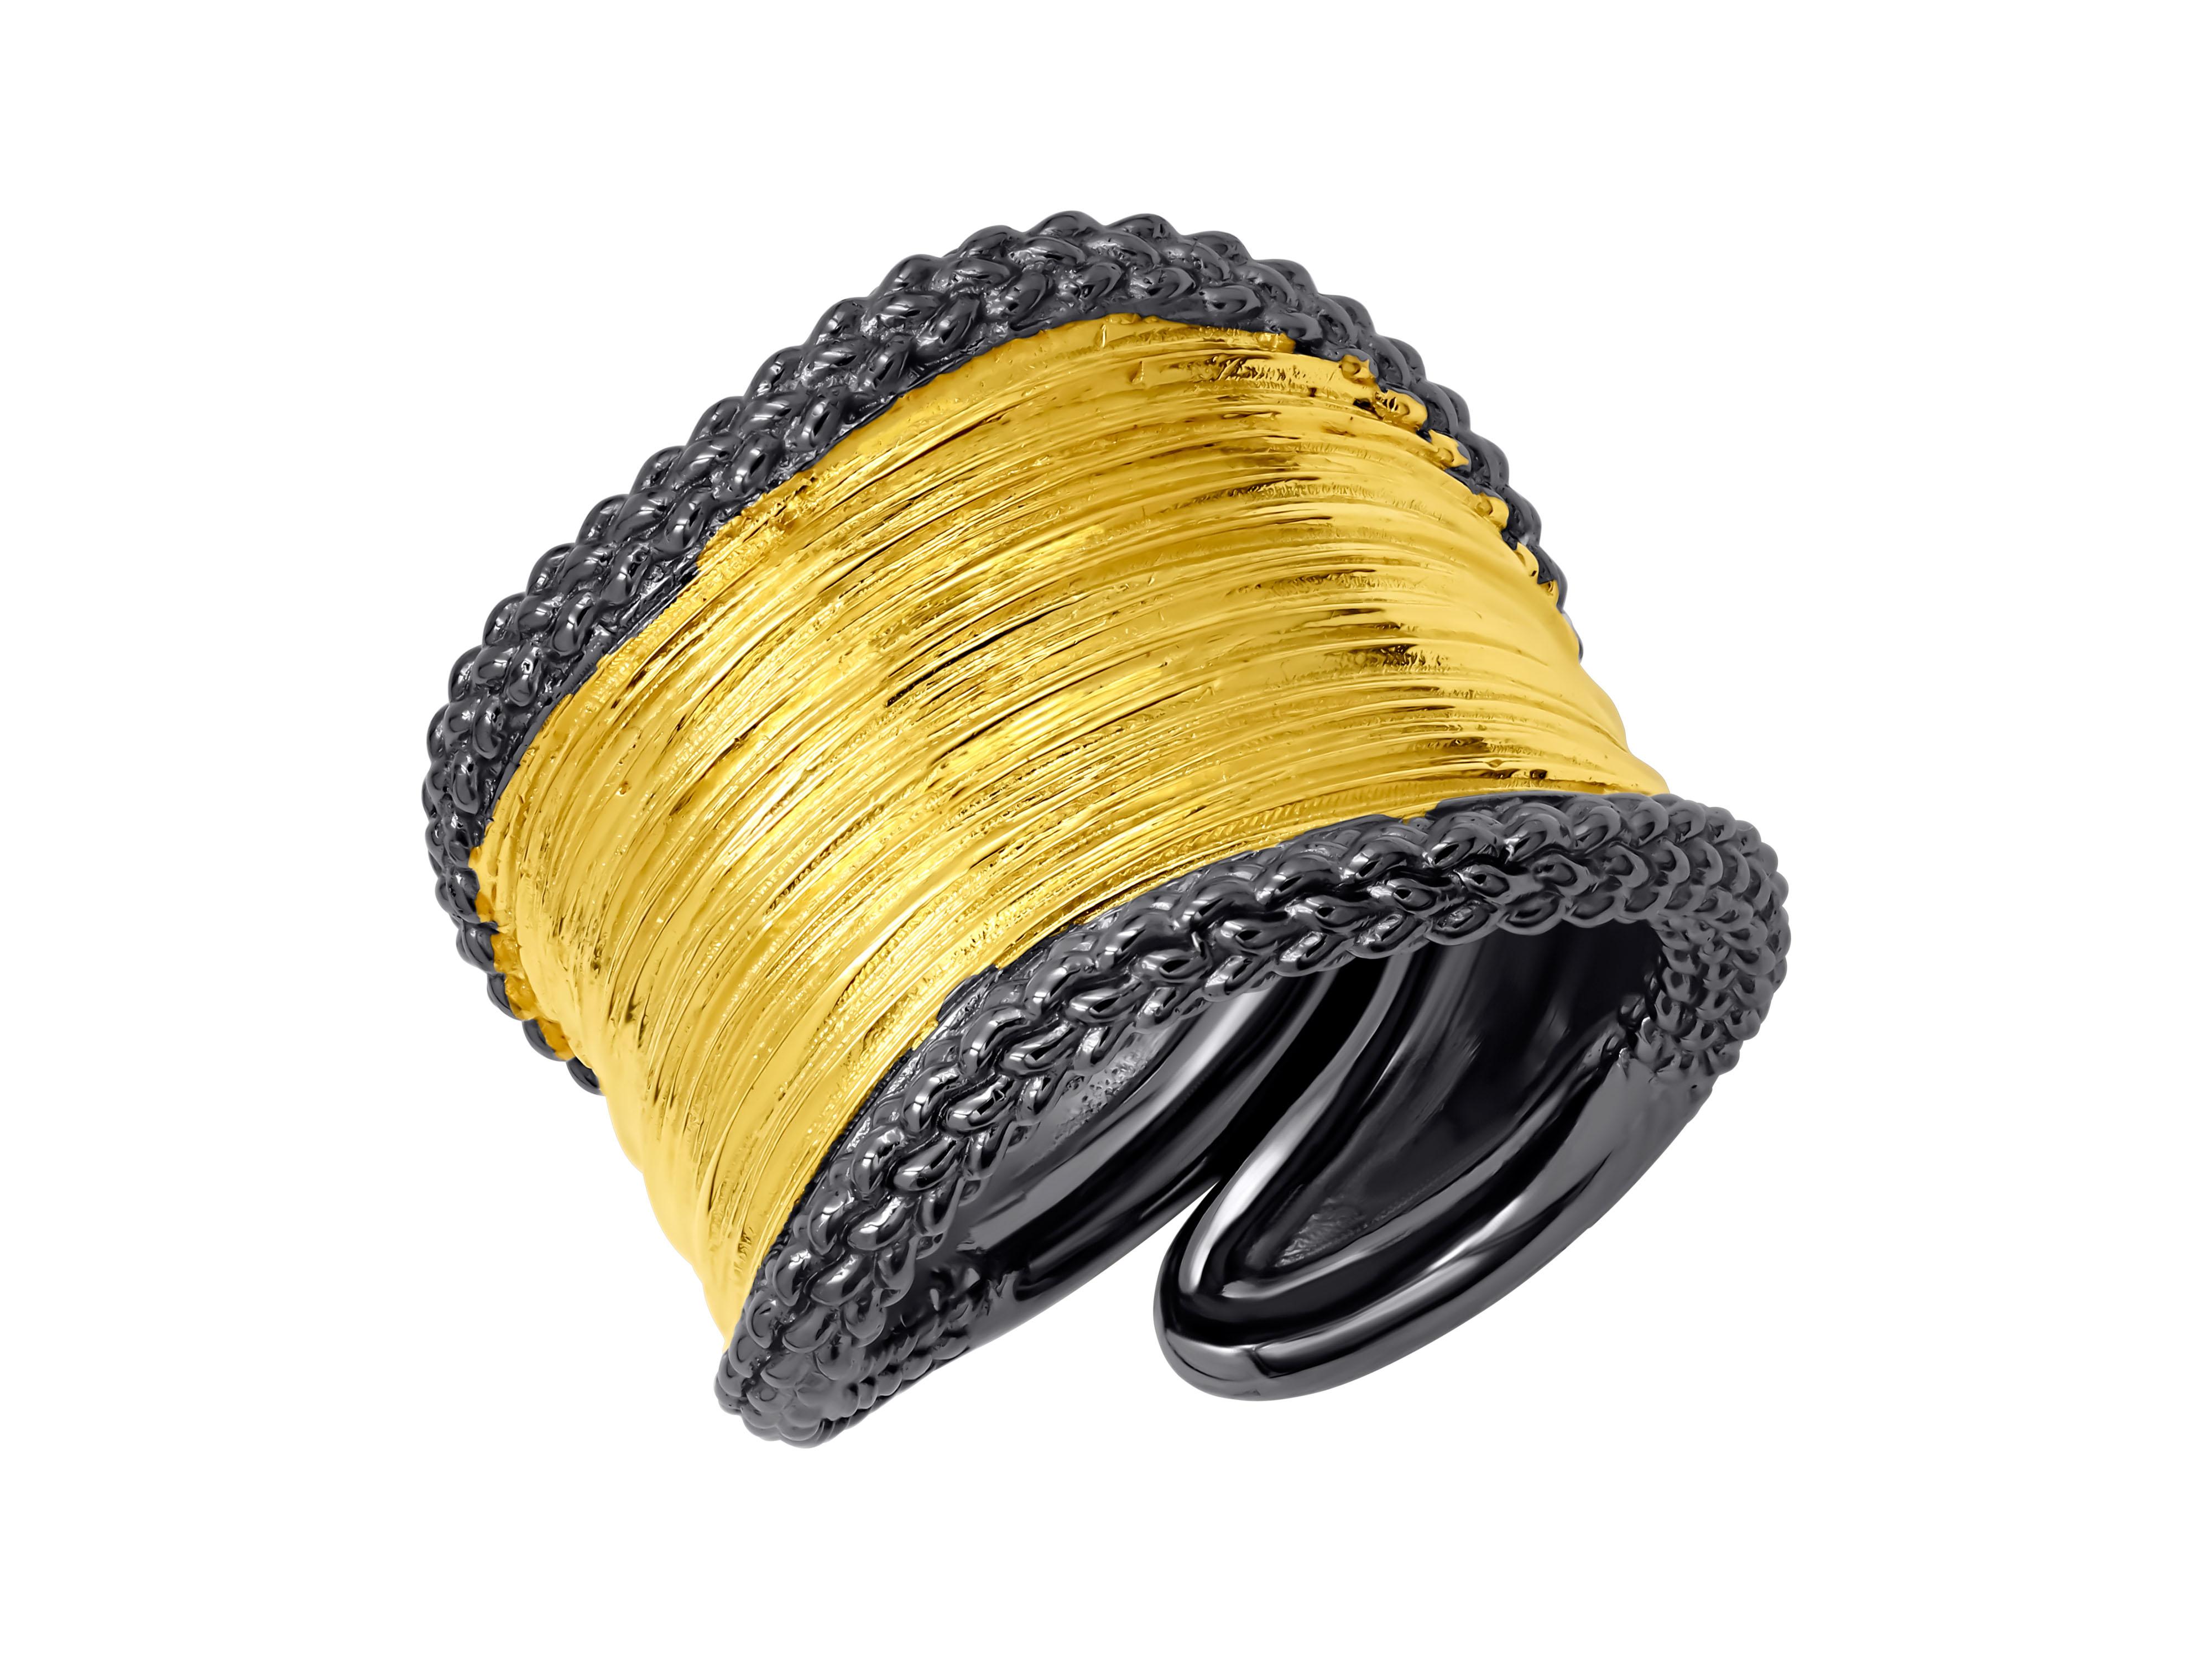 Bijou d'apparat composé d'une large bande en argent, avec une surface plaquée or et des bords noircis. L'anneau est réglable et présente un design et une texture uniques, ce qui lui confère une touche d'avant-garde et de modernité.
Le placage en or